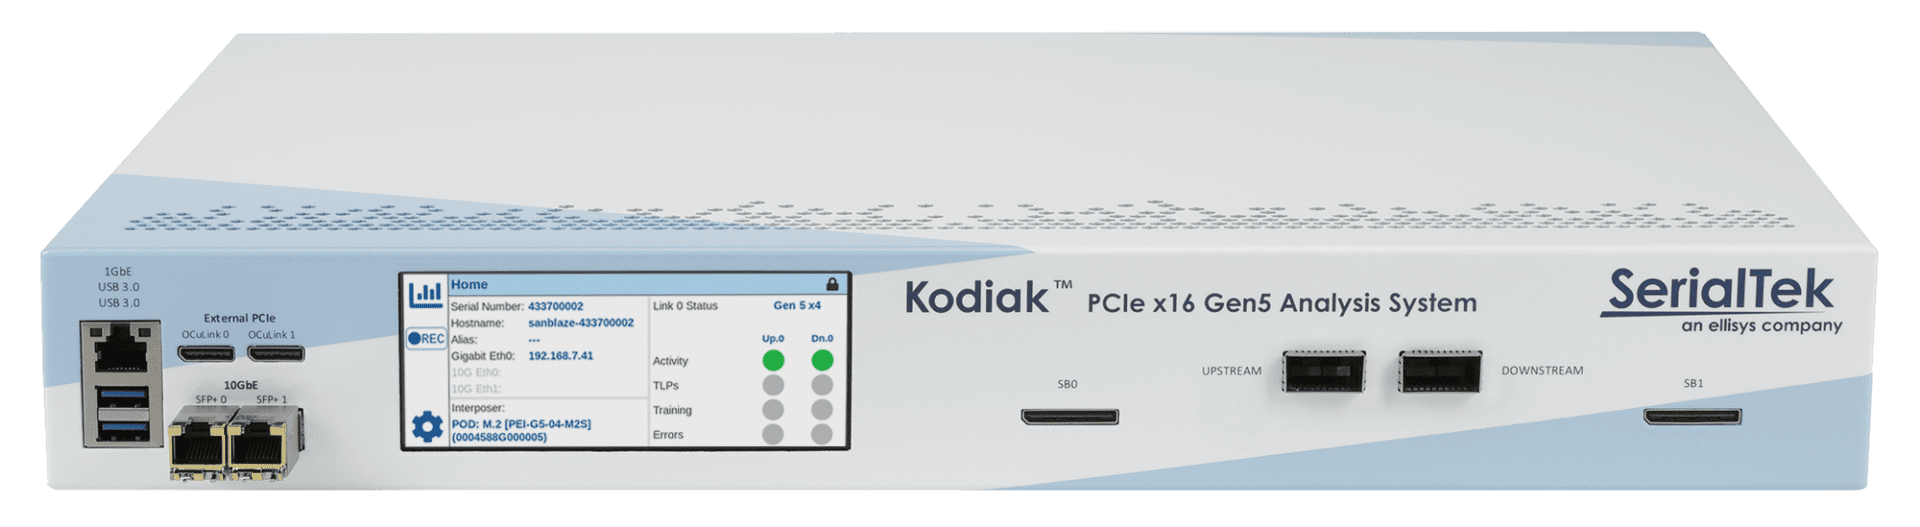 Kodiak-Gen5-x16-front